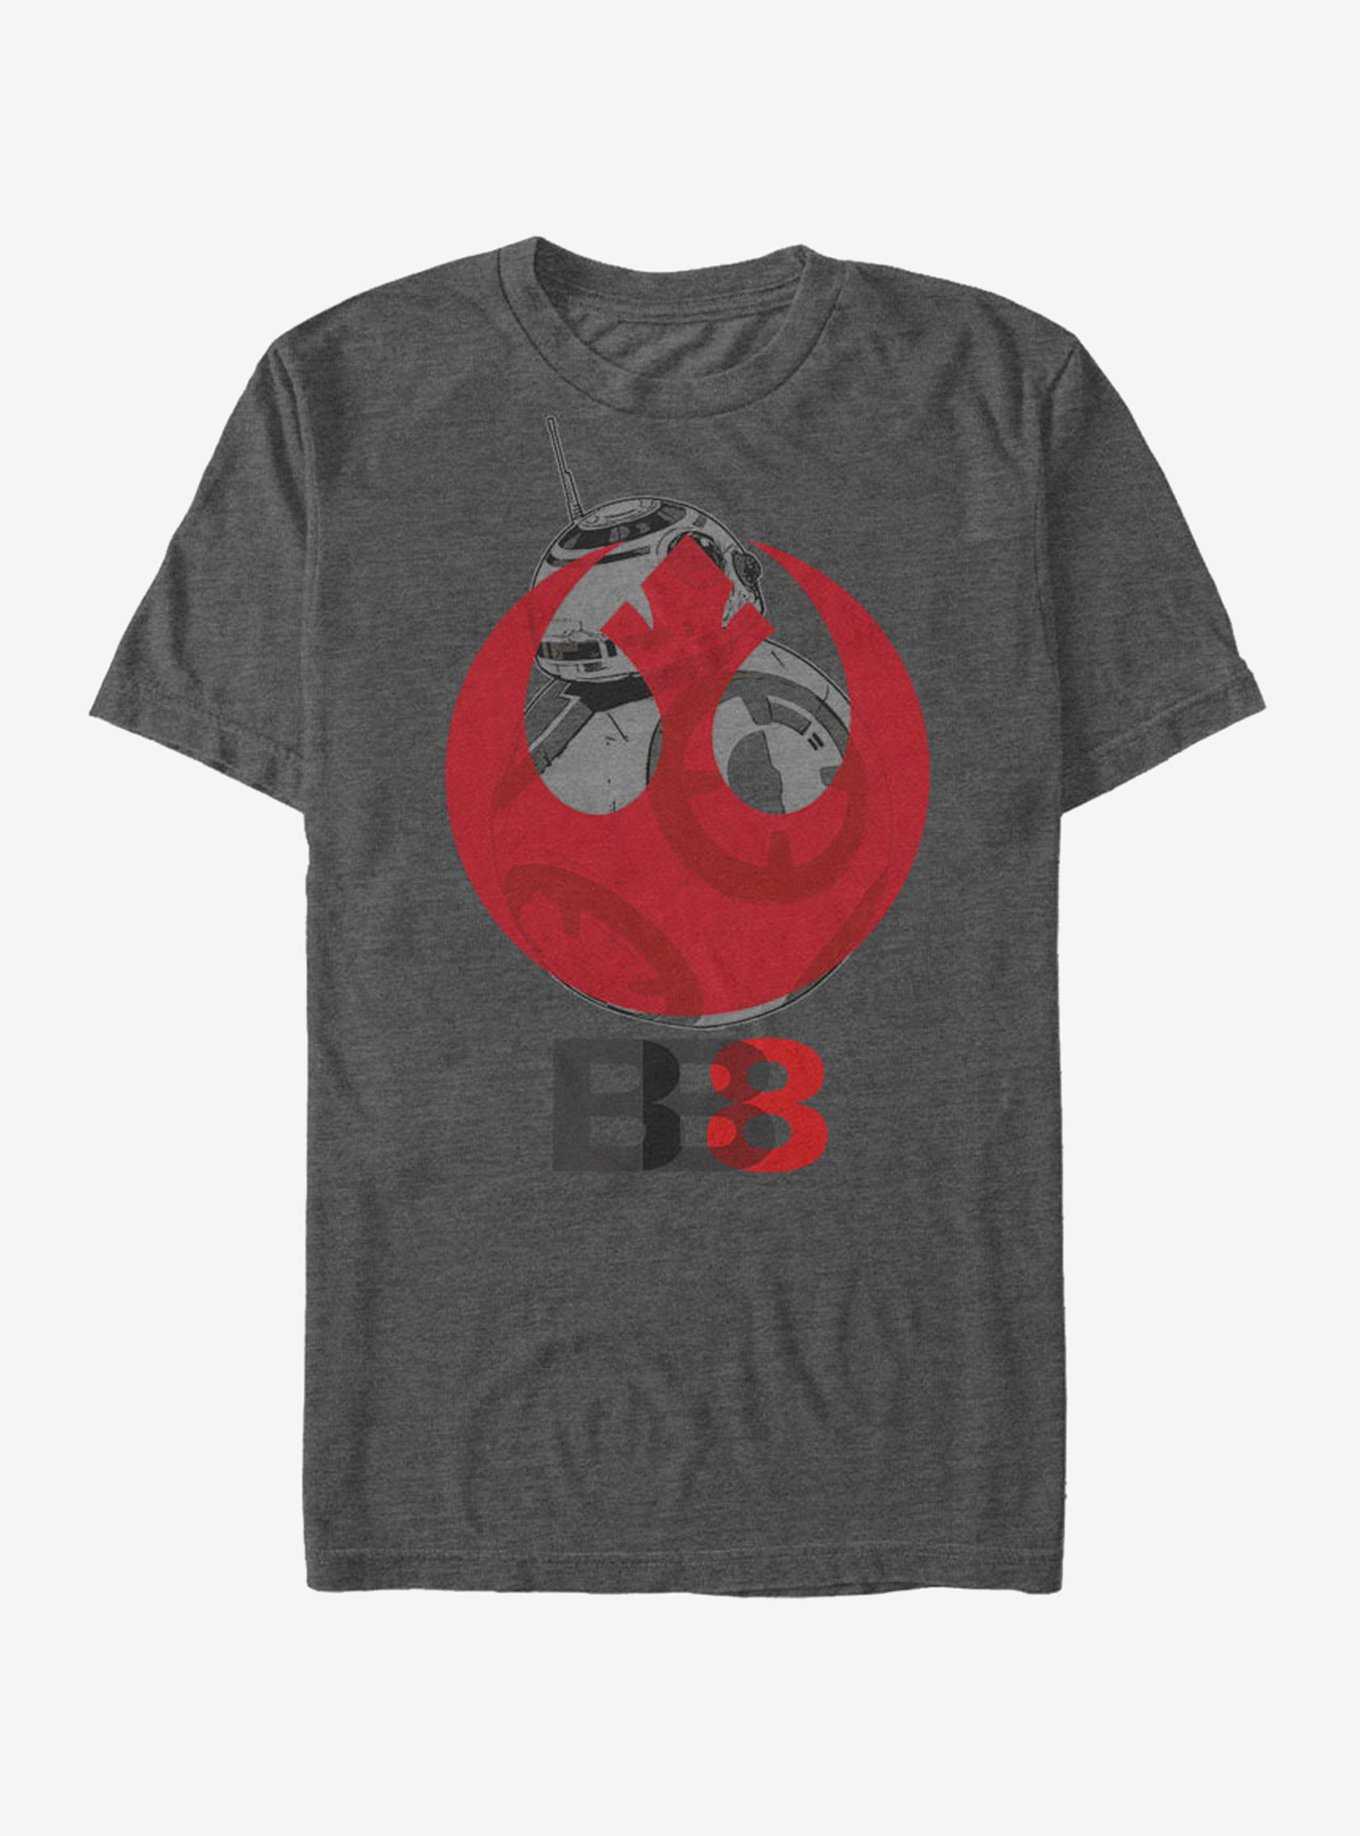 Star Wars BB-8 Rebel Emblem T-Shirt, , hi-res